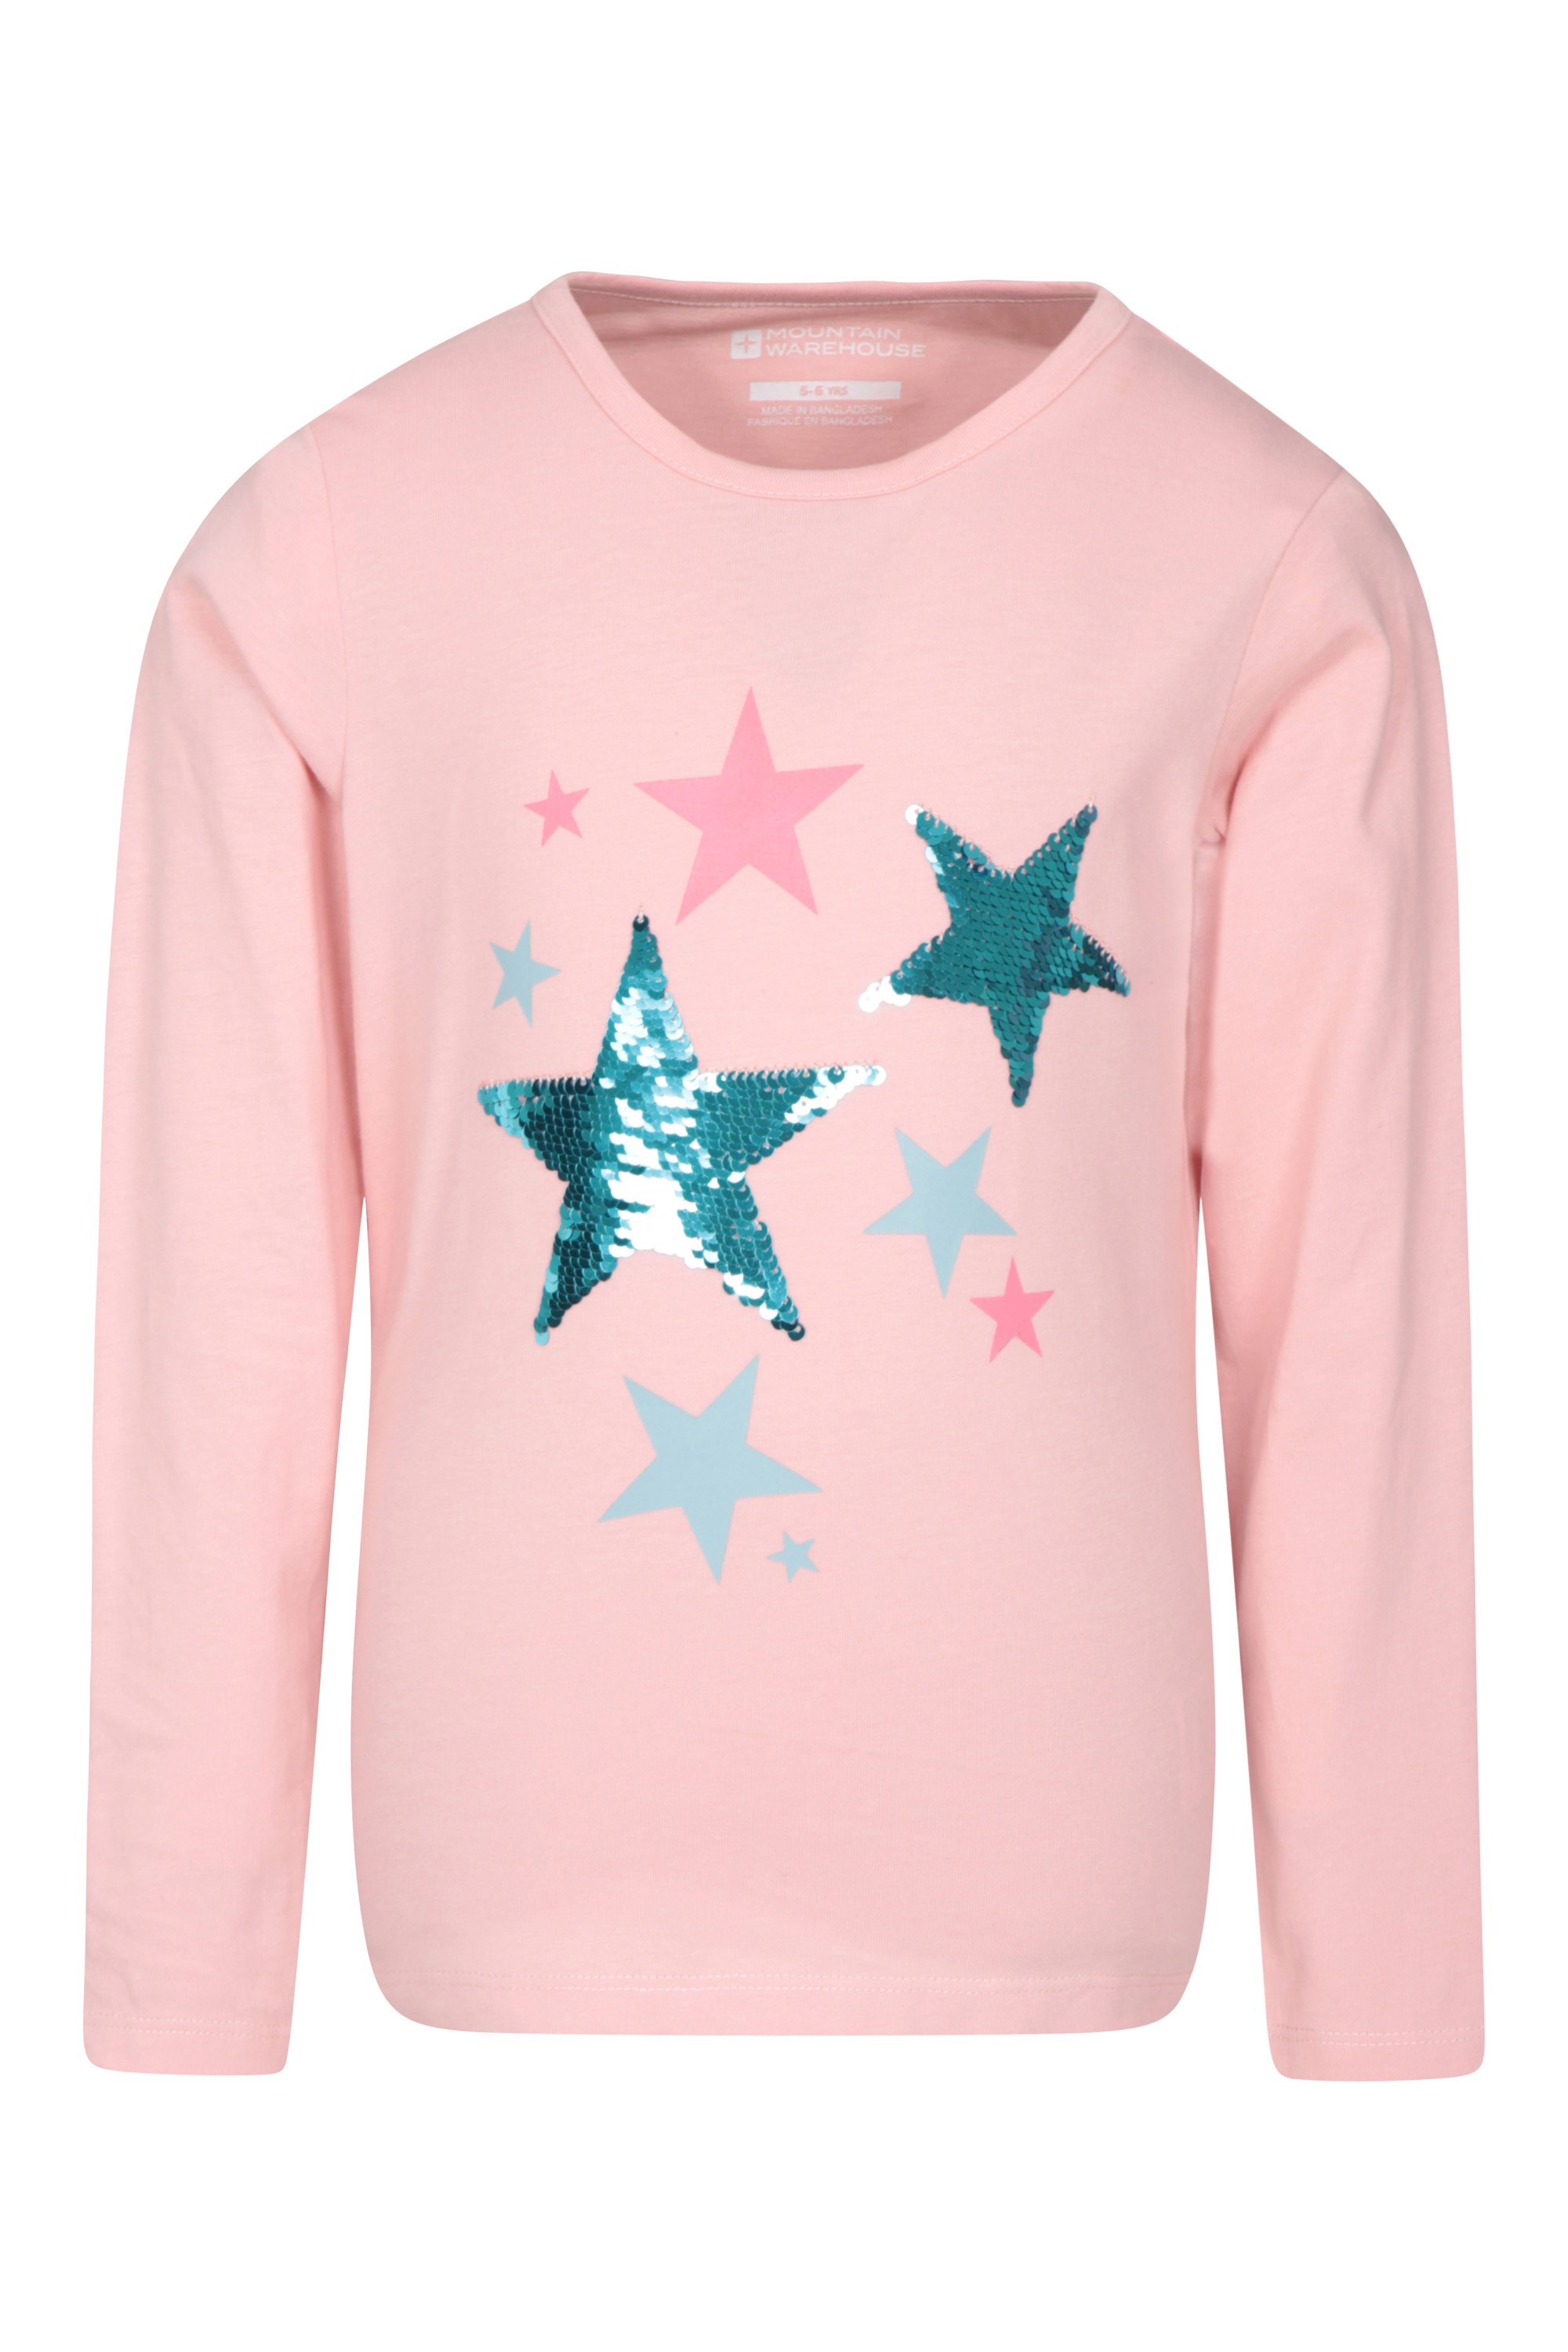 Sequin Star Kids T-shirt - Pink